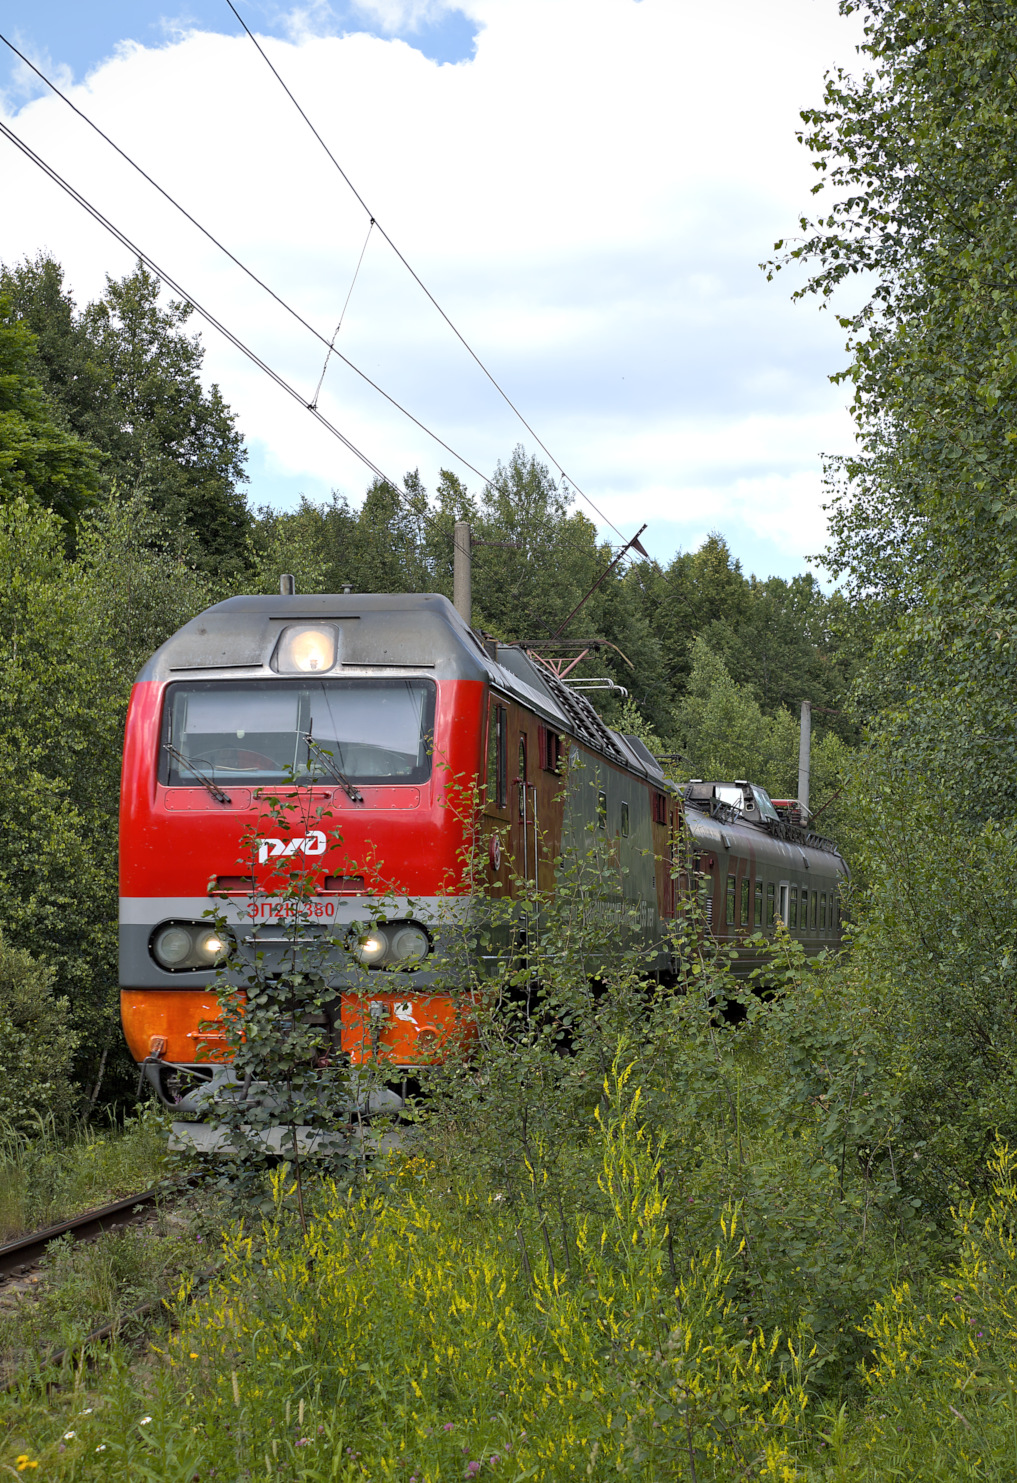 ЭП2К-380; Фотозарисовки (Московская железная дорога)